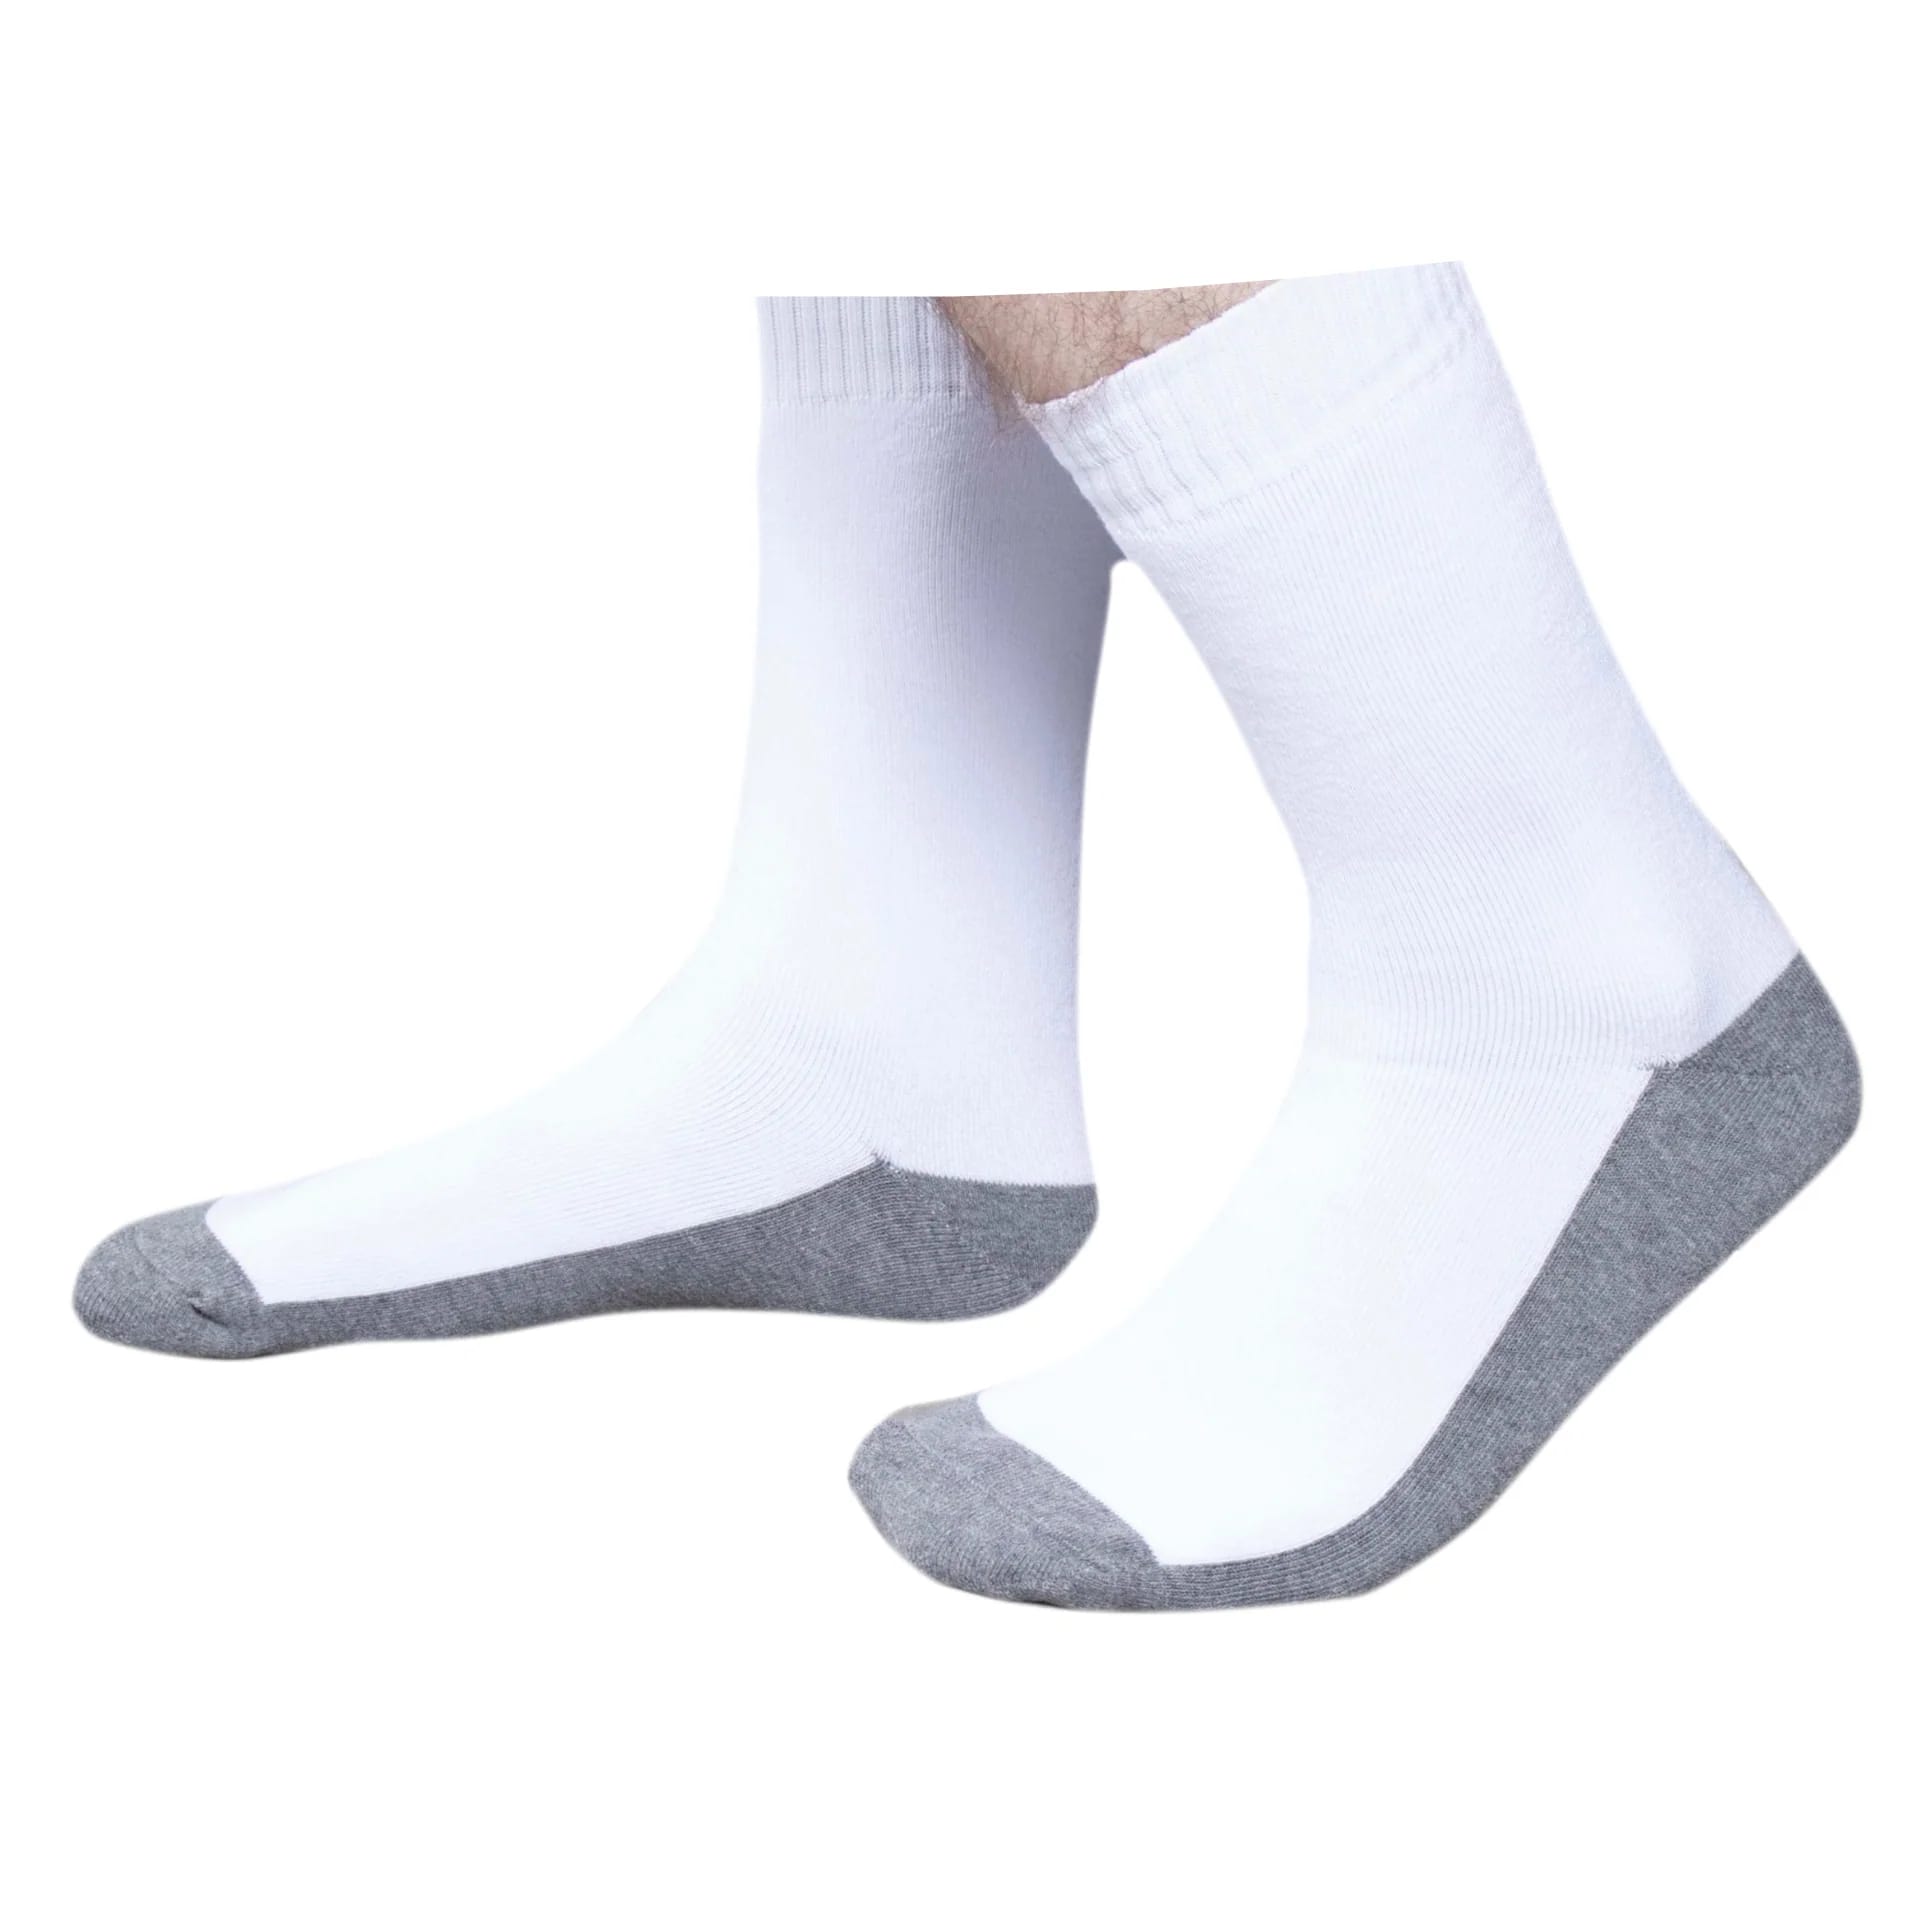 Men's Bashkir sports socks Gray from al samah